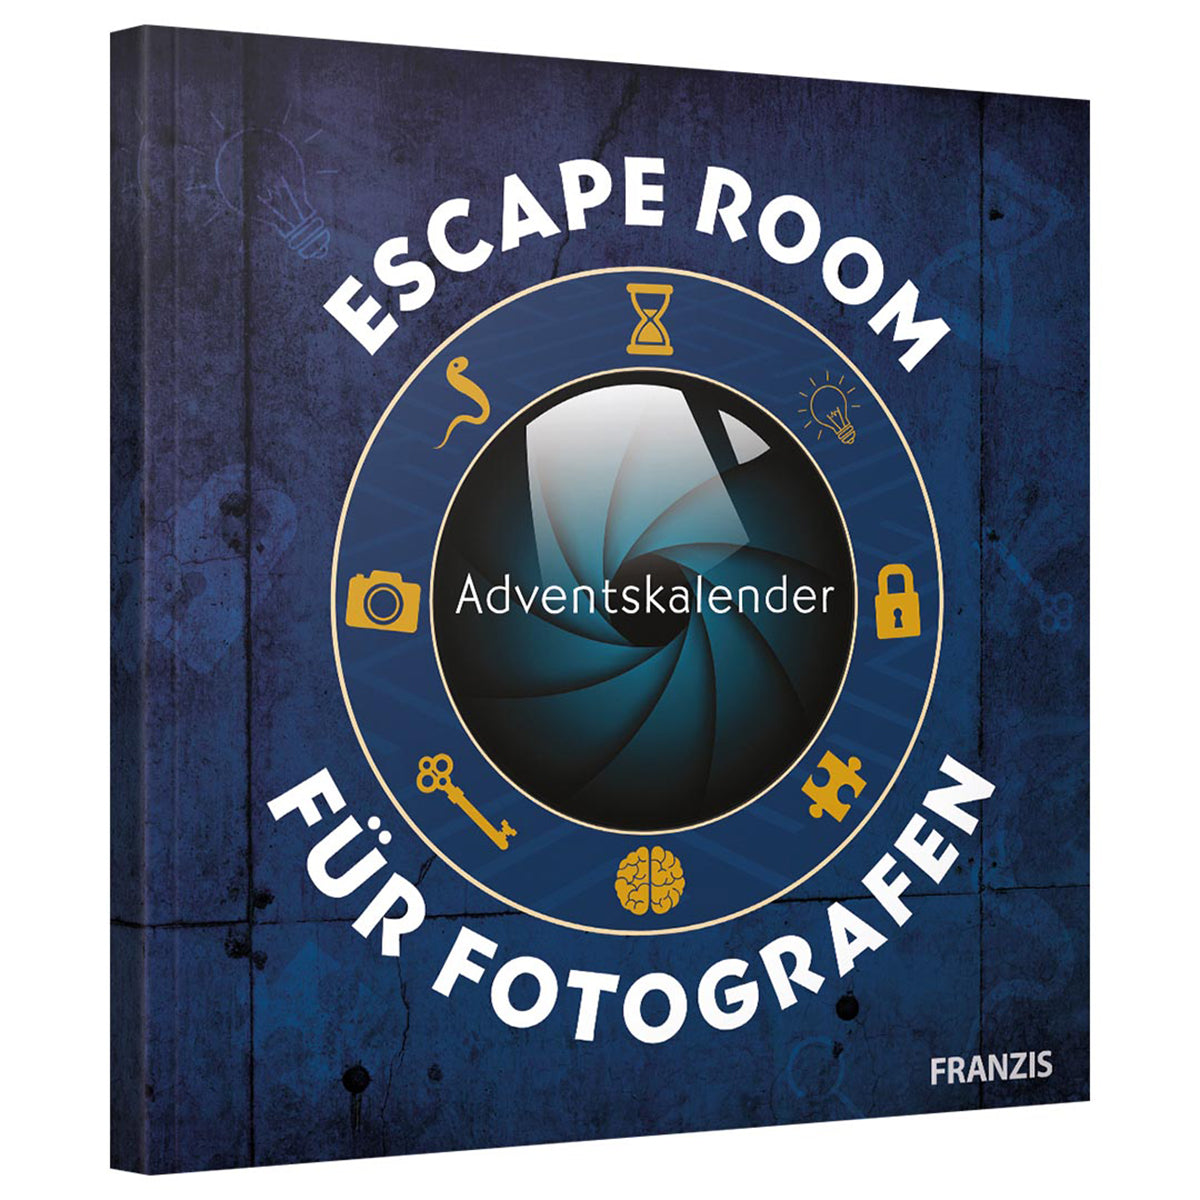 Franzis 60699 Adventskalender Escape Room für Fotografen 24 Rätsel für mehr fotografisches Know-how